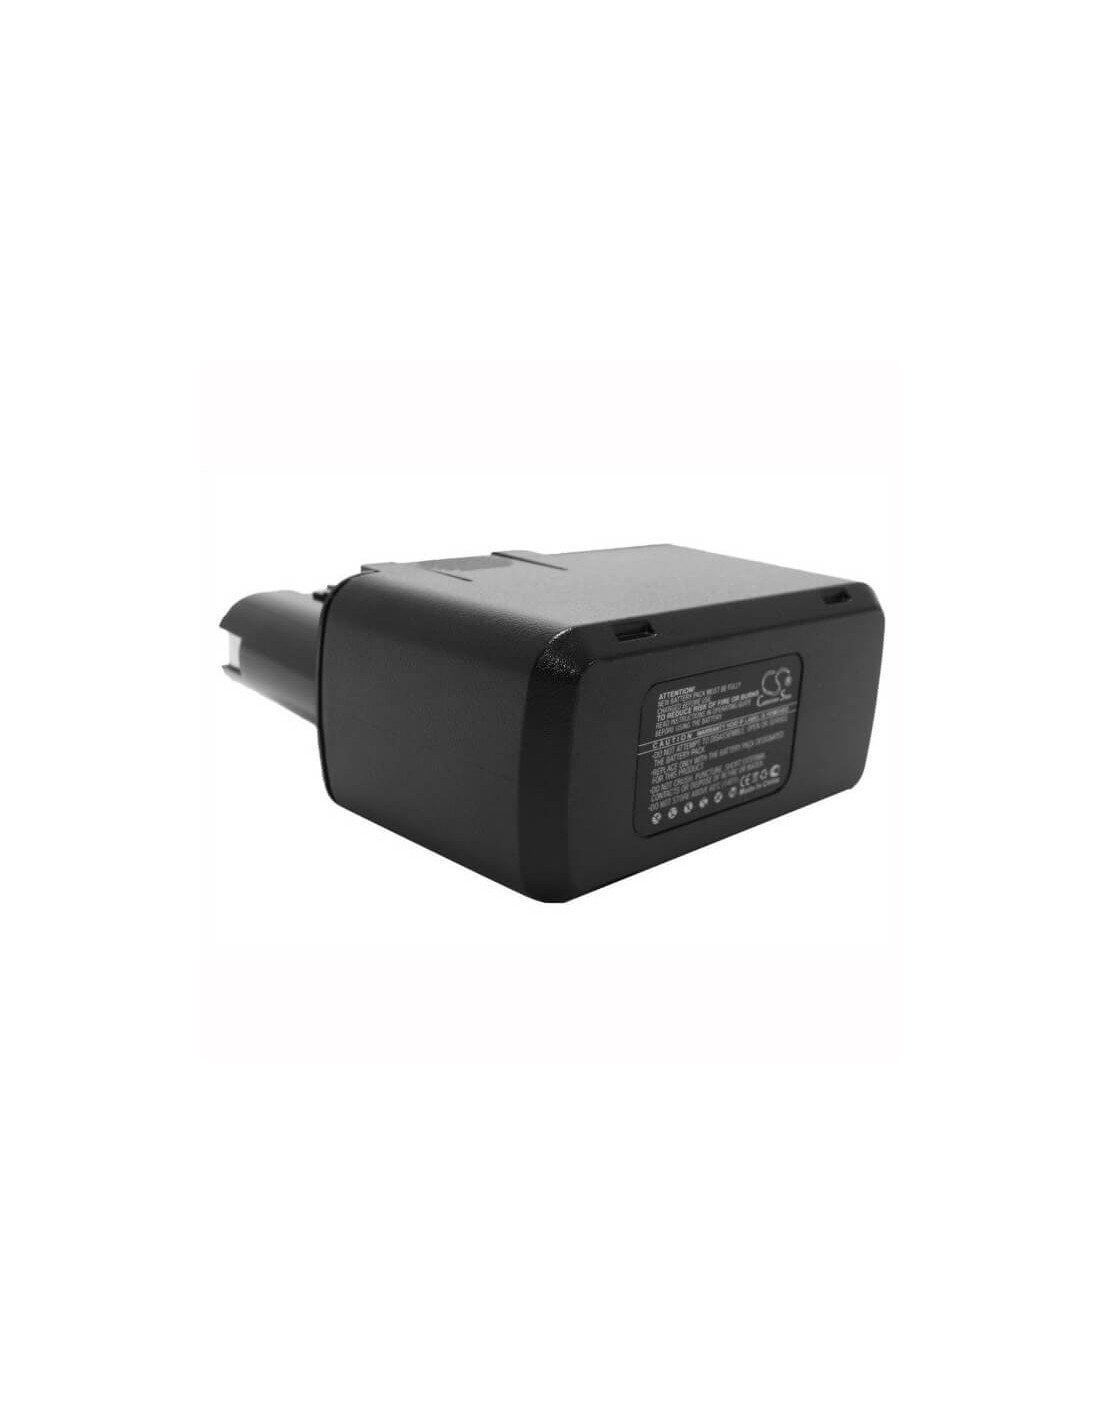 Battery for Ramset Csd12c, Ptub17, Sbd12 12V, 1500mAh - 18.00Wh